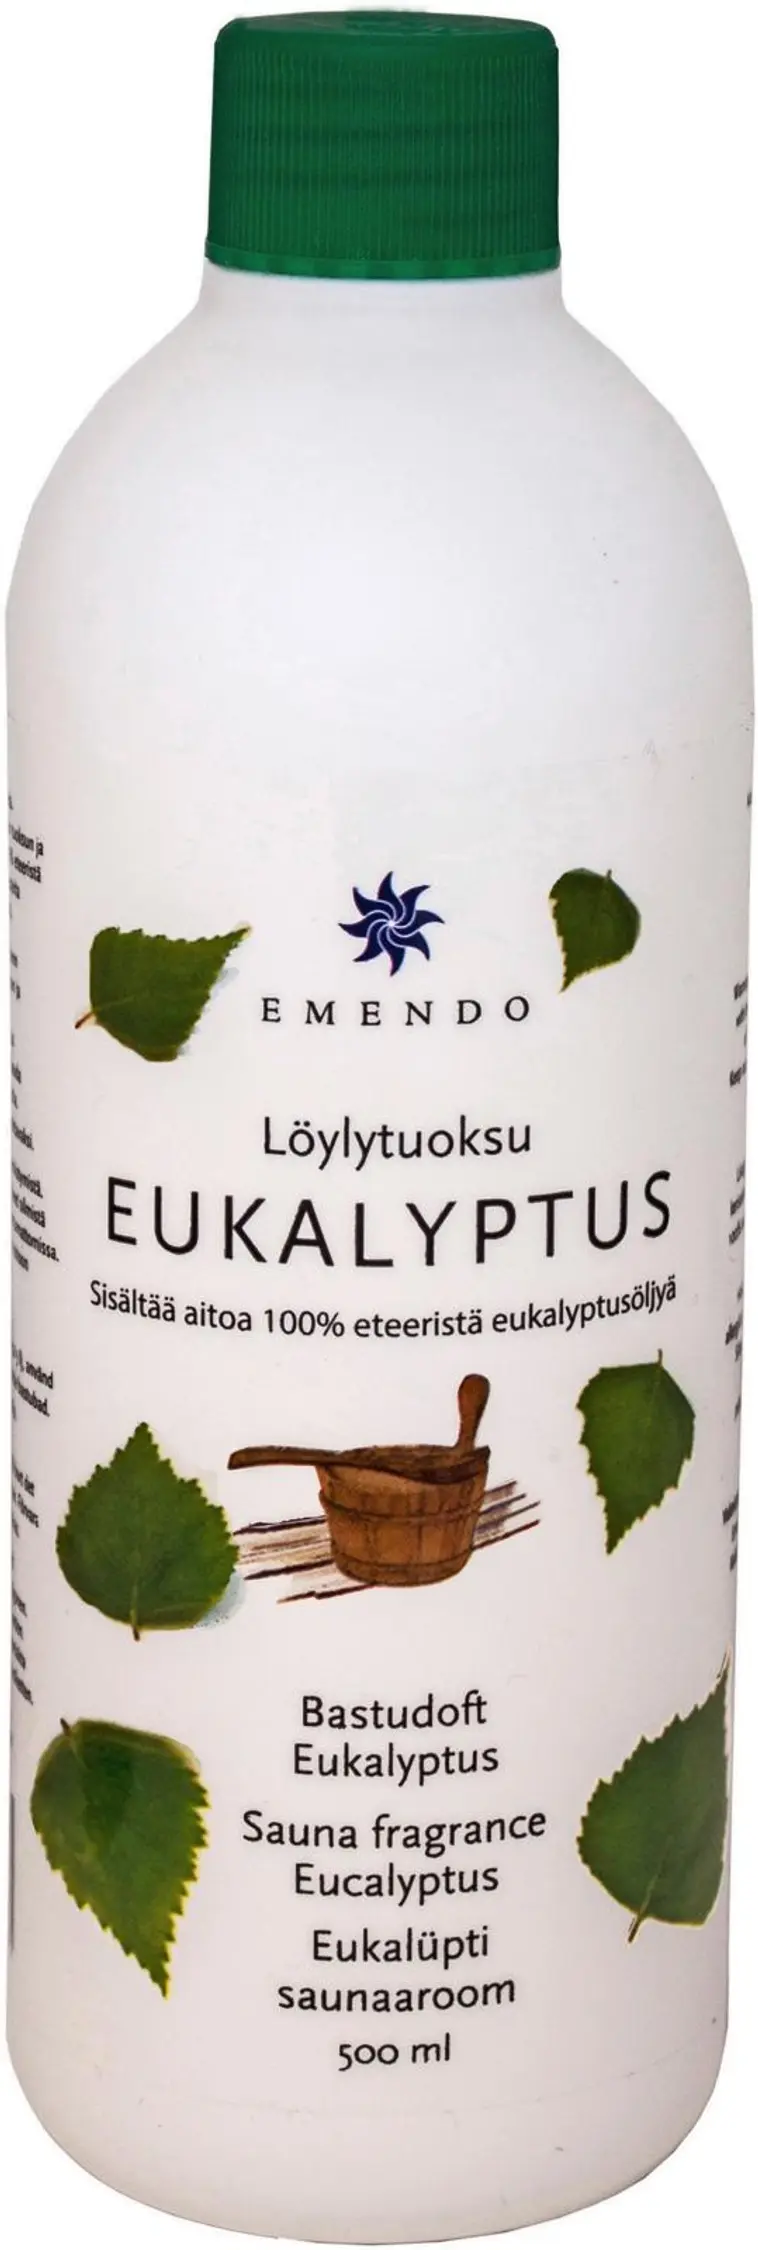 Emendo 500ml löylytuoksu eukalyptus | Prisma verkkokauppa